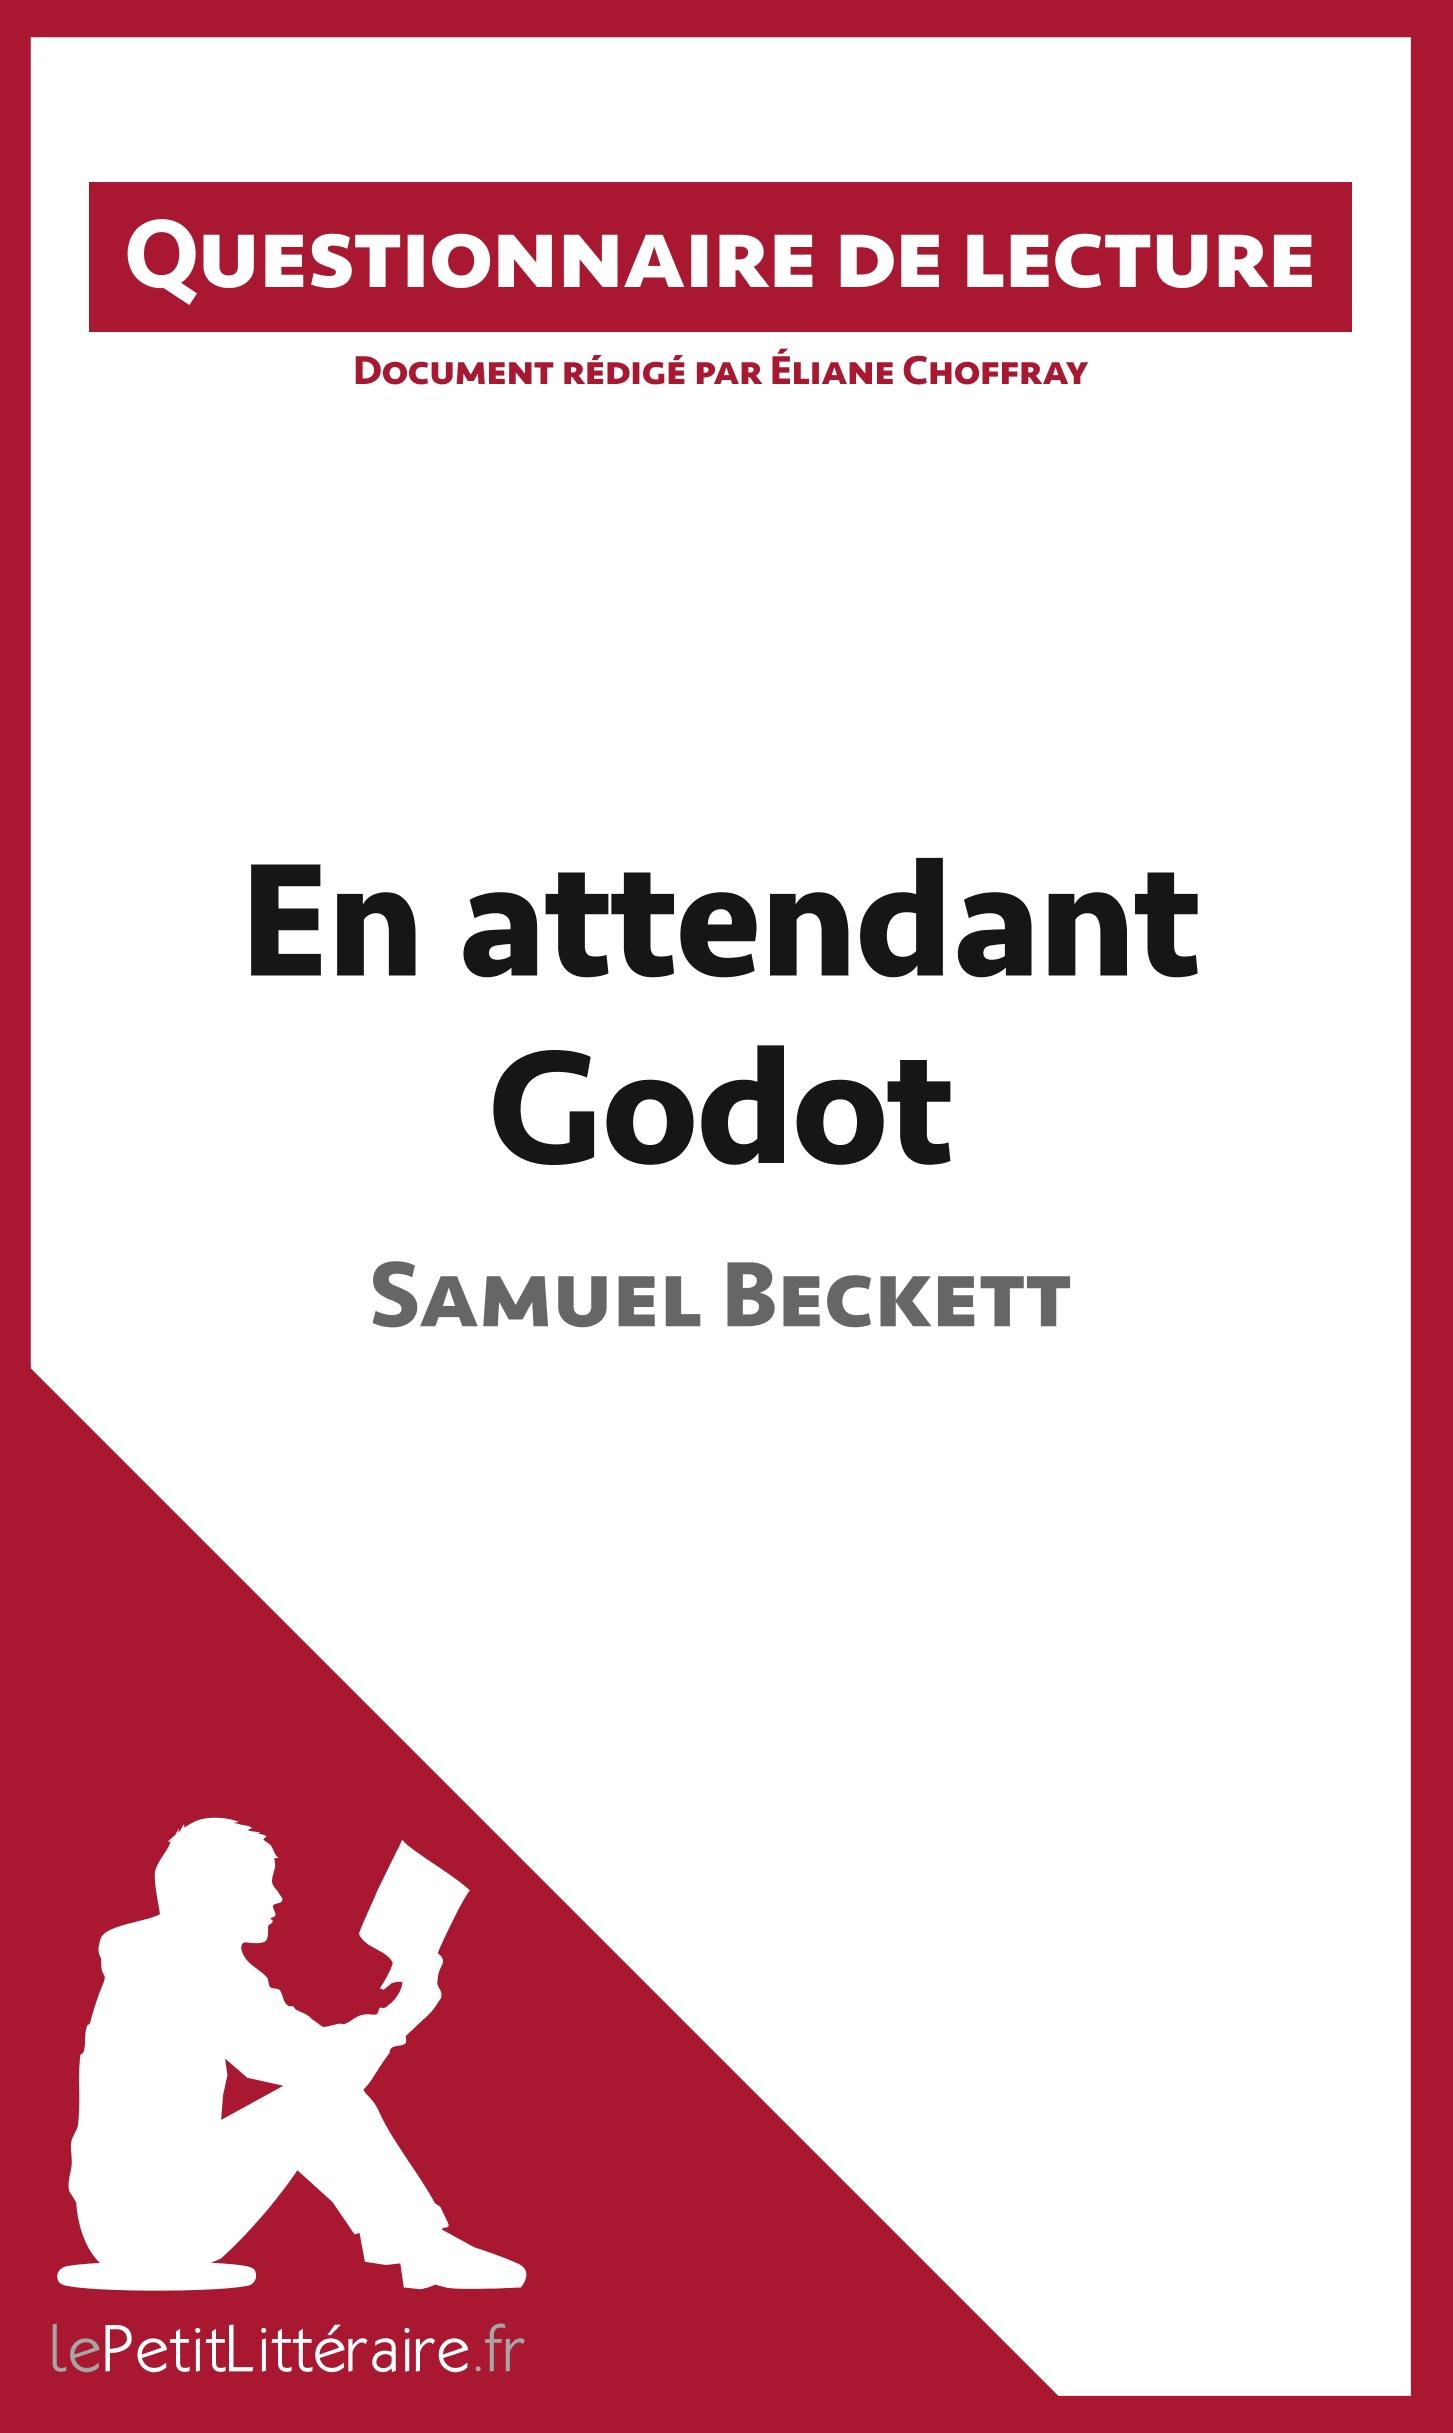 En attendant Godot de Samuel Beckett - Choffray, Ã‰liane|LepetitlittÃ©raire